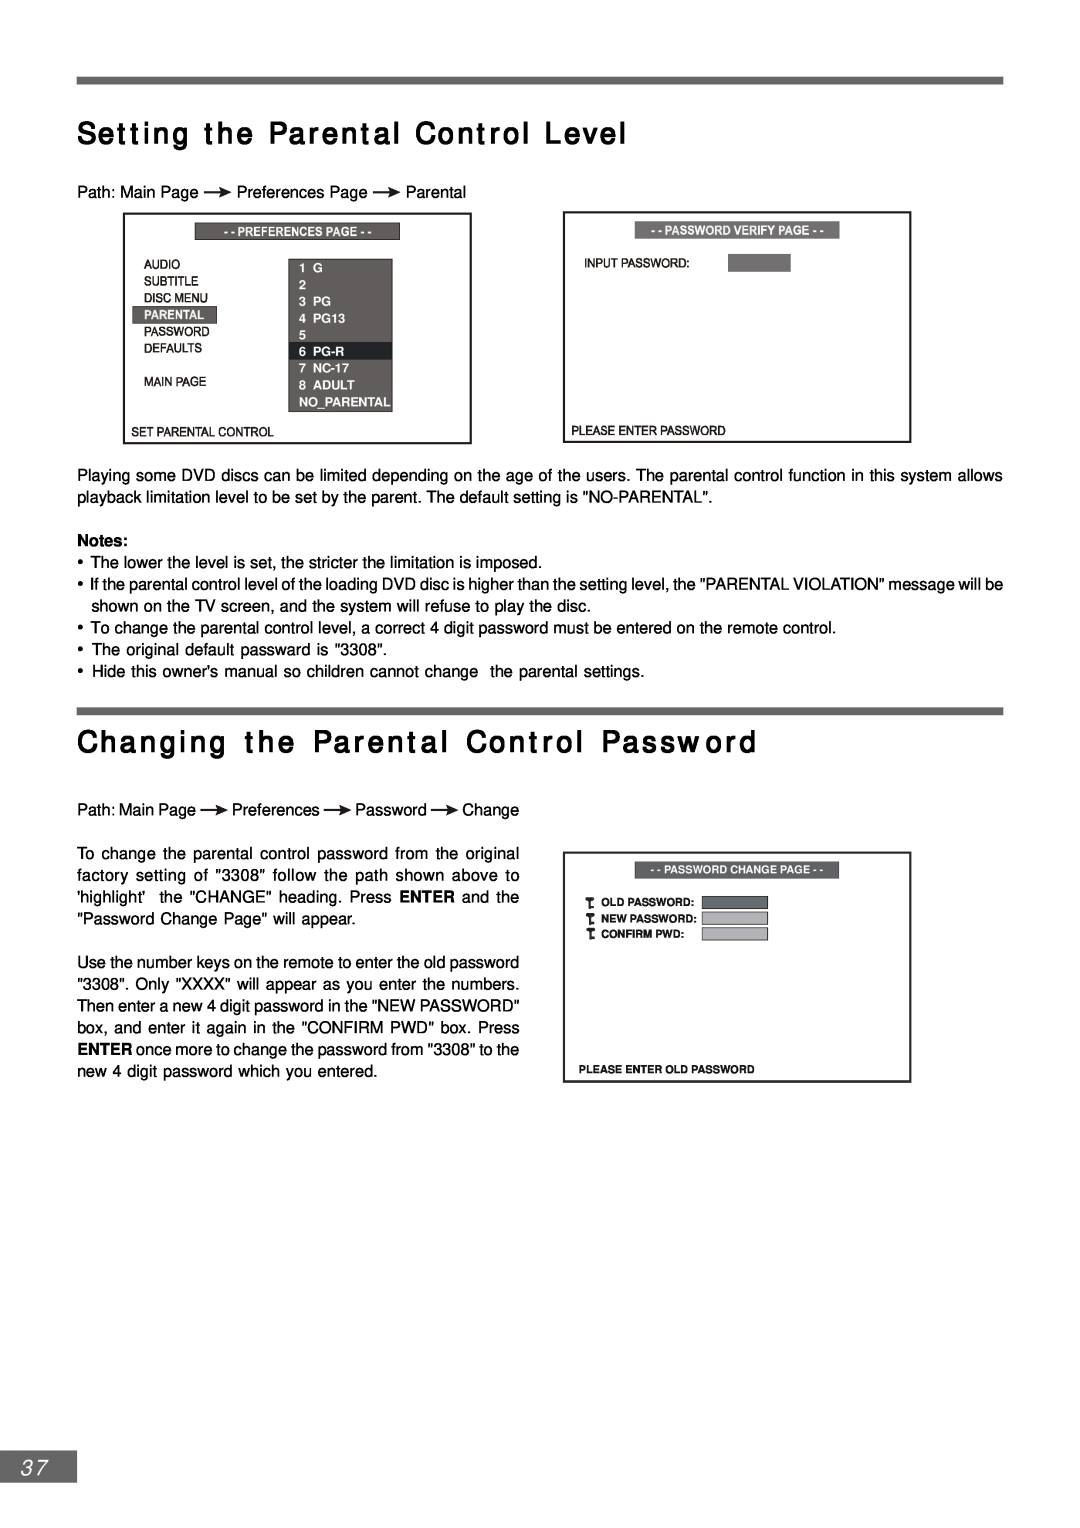 Emerson AV301 owner manual Setting the Parental Control Level, Changing the Parental Control Password 